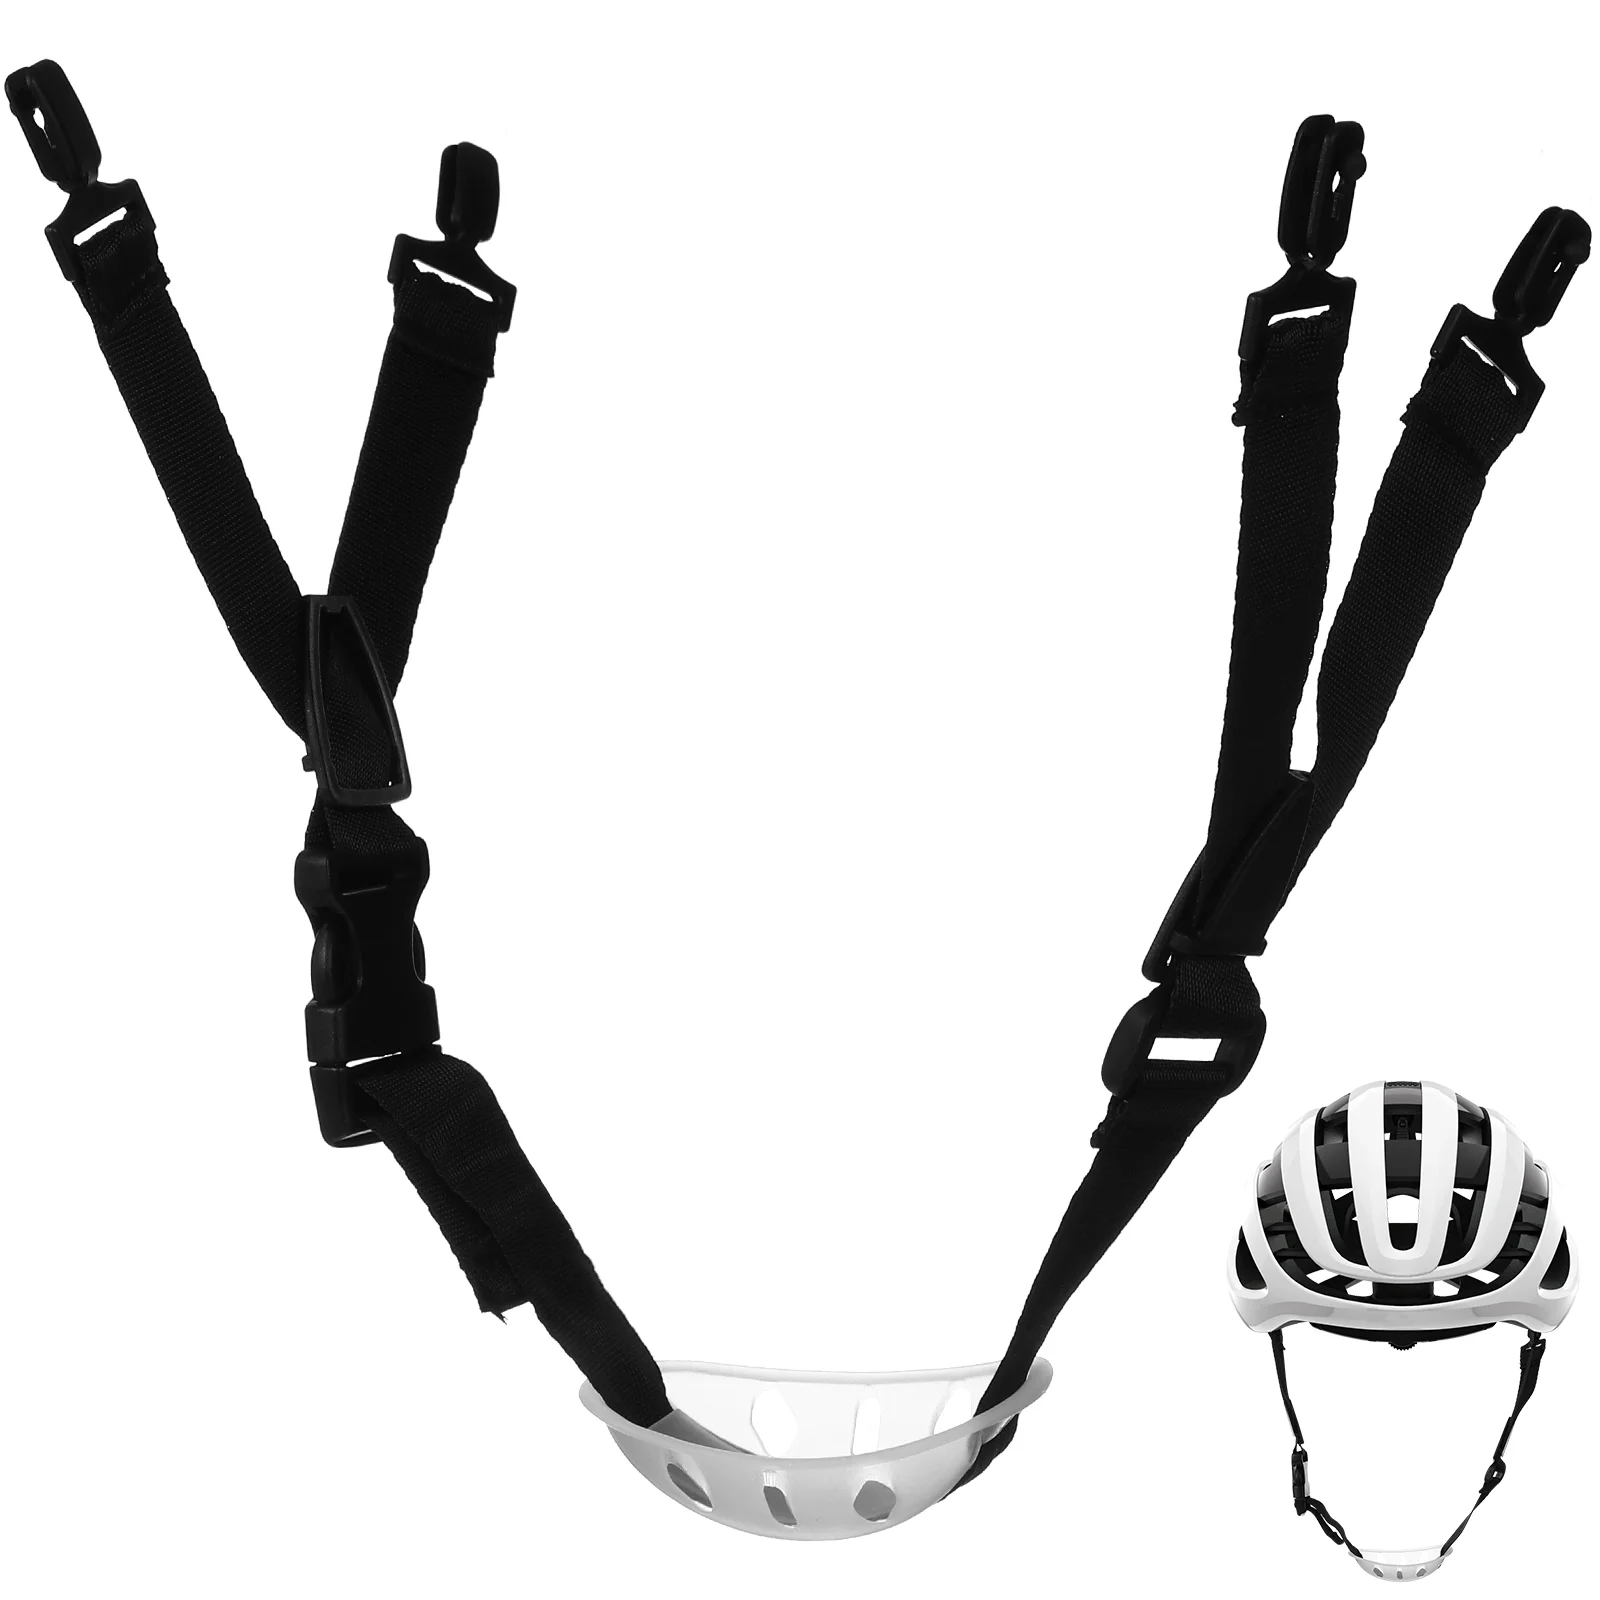 

Жесткий ремешок для подбородка шлем ремешок для подбородка защитный шлем шнур для подбородка универсальный шлем ремешок для подбородка регулируемый ремешок для подбородка